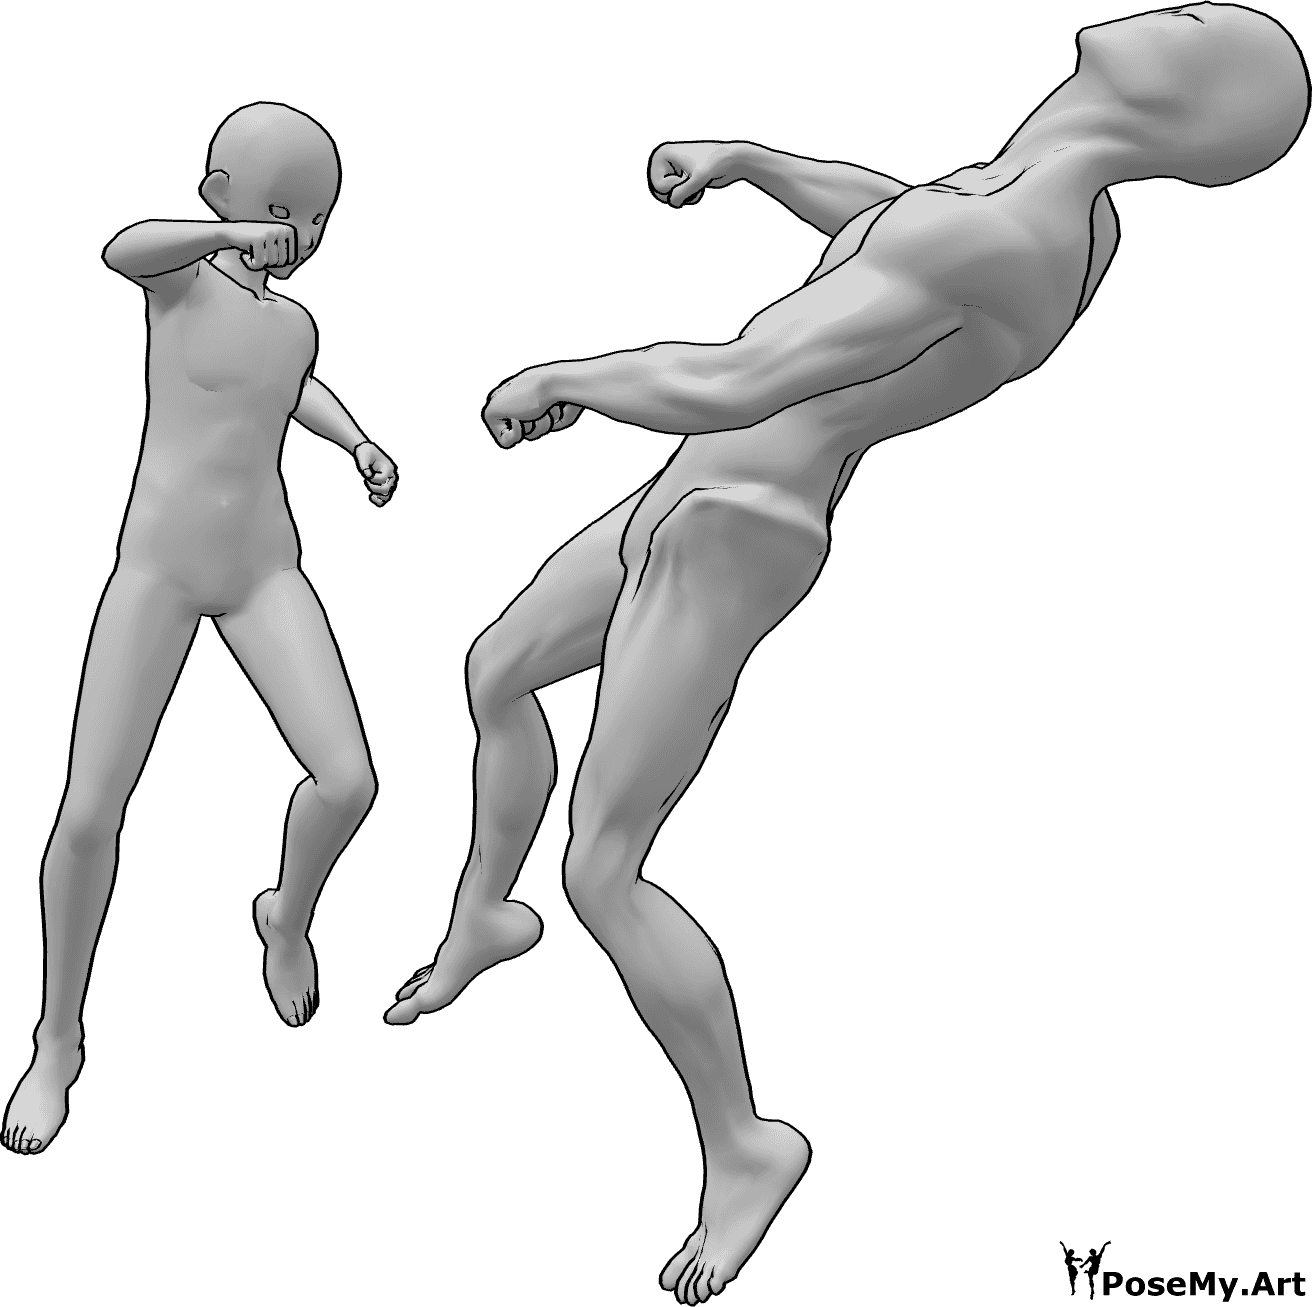 Référence des poses- Anime knock out pose - Le héros masculin de l'anime met KO l'ennemi qui vole en arrière inconsciemment.